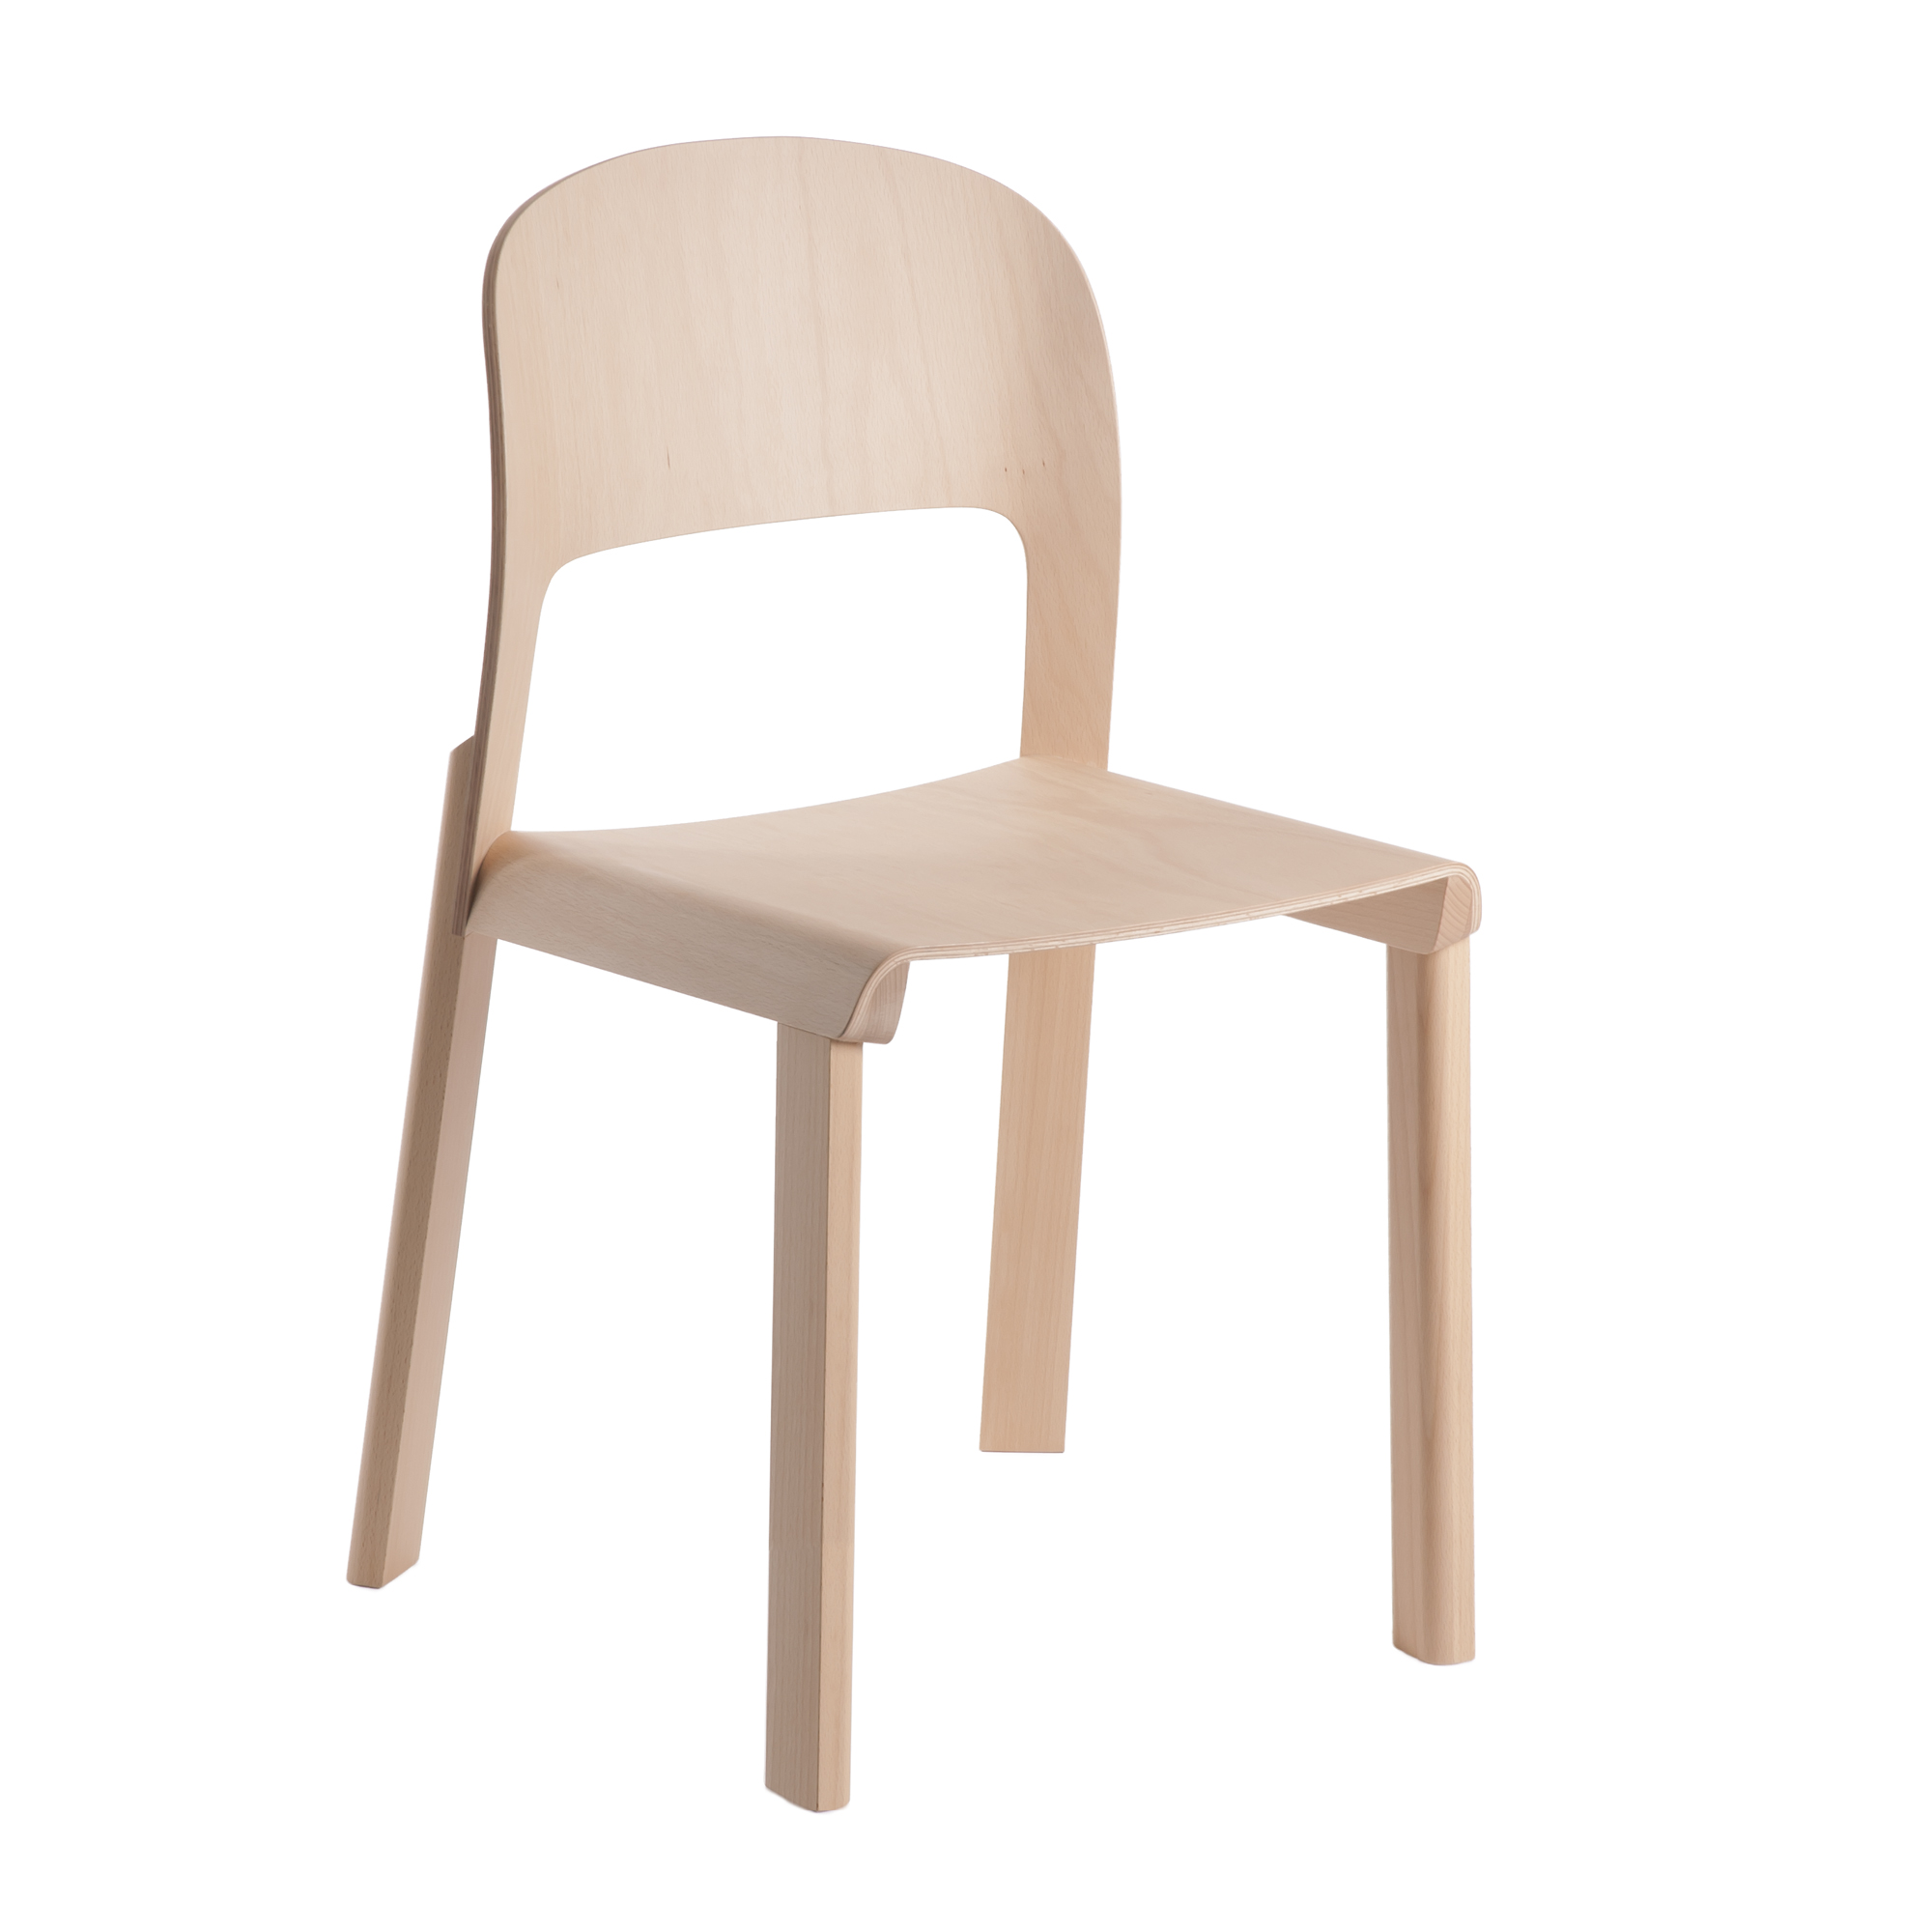 Juppa Chair by Jörg Boner for Atelier Pfister